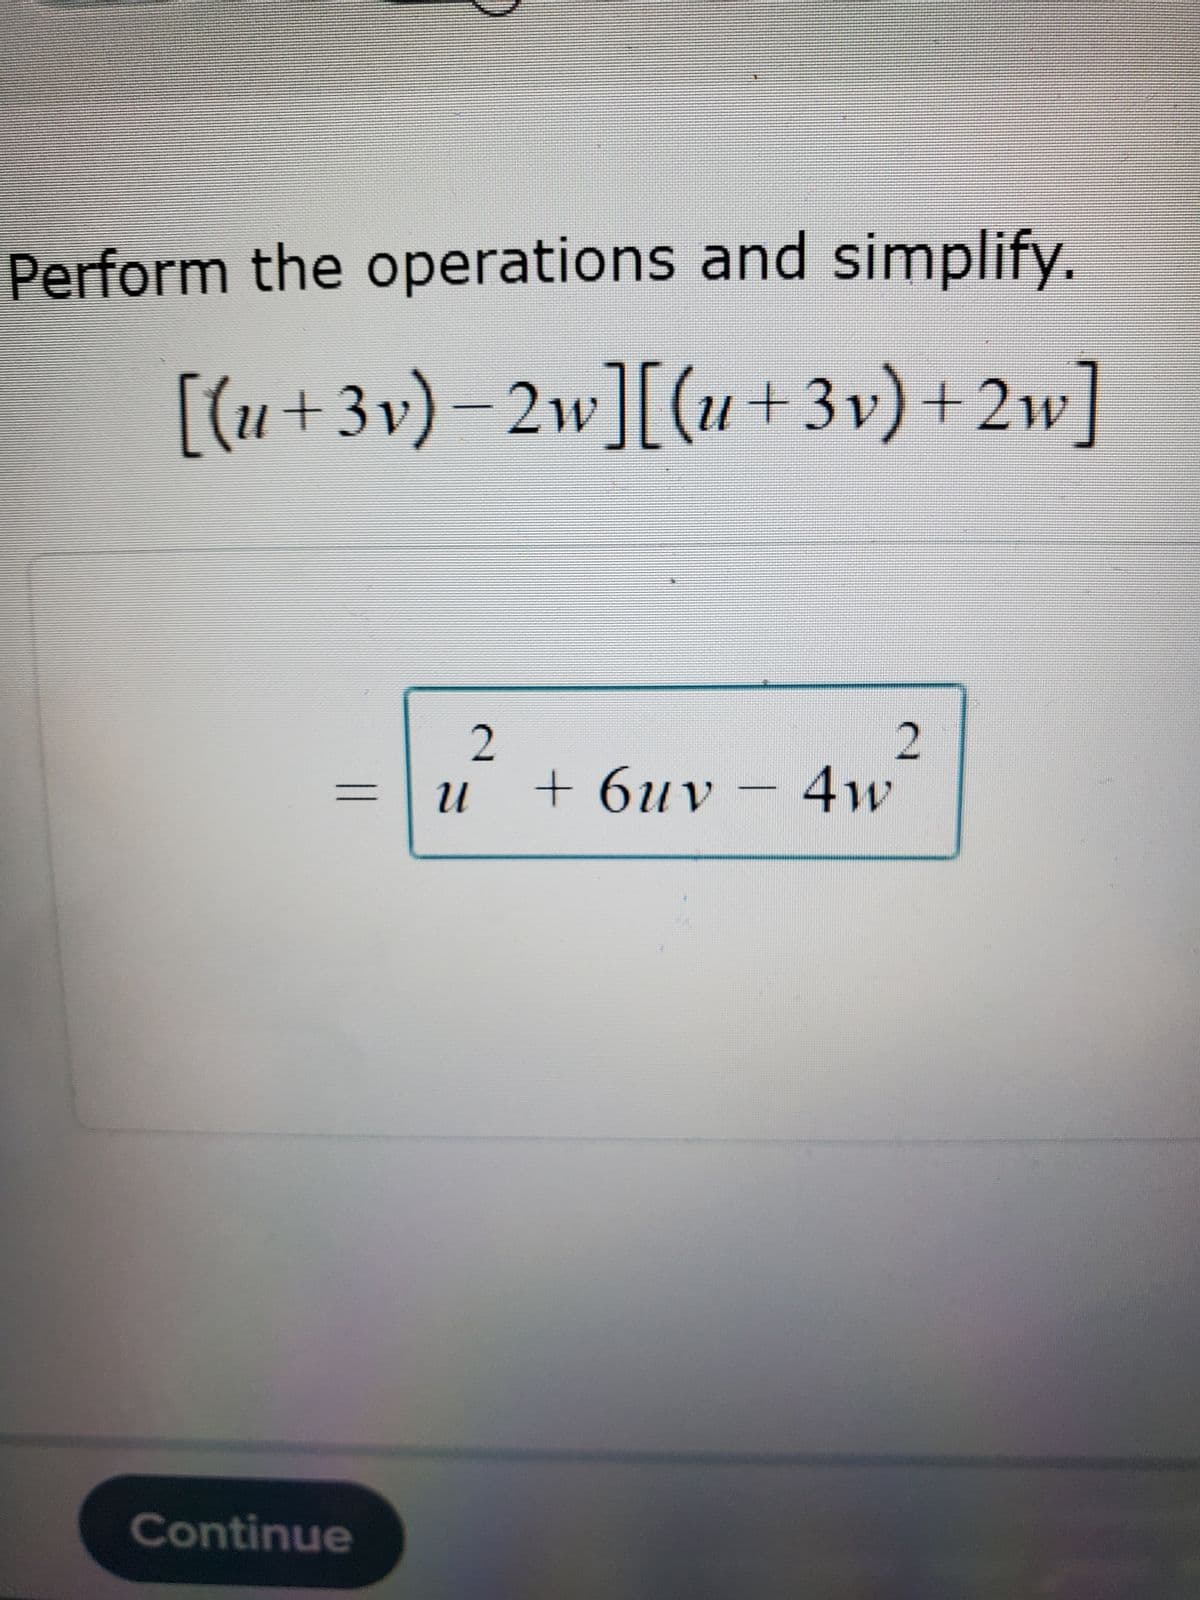 Perform the operations and simplify.
[(u+3v)−2w][(u +3v) +2w]
Continue
2
U
2
+ 6uv - 4w